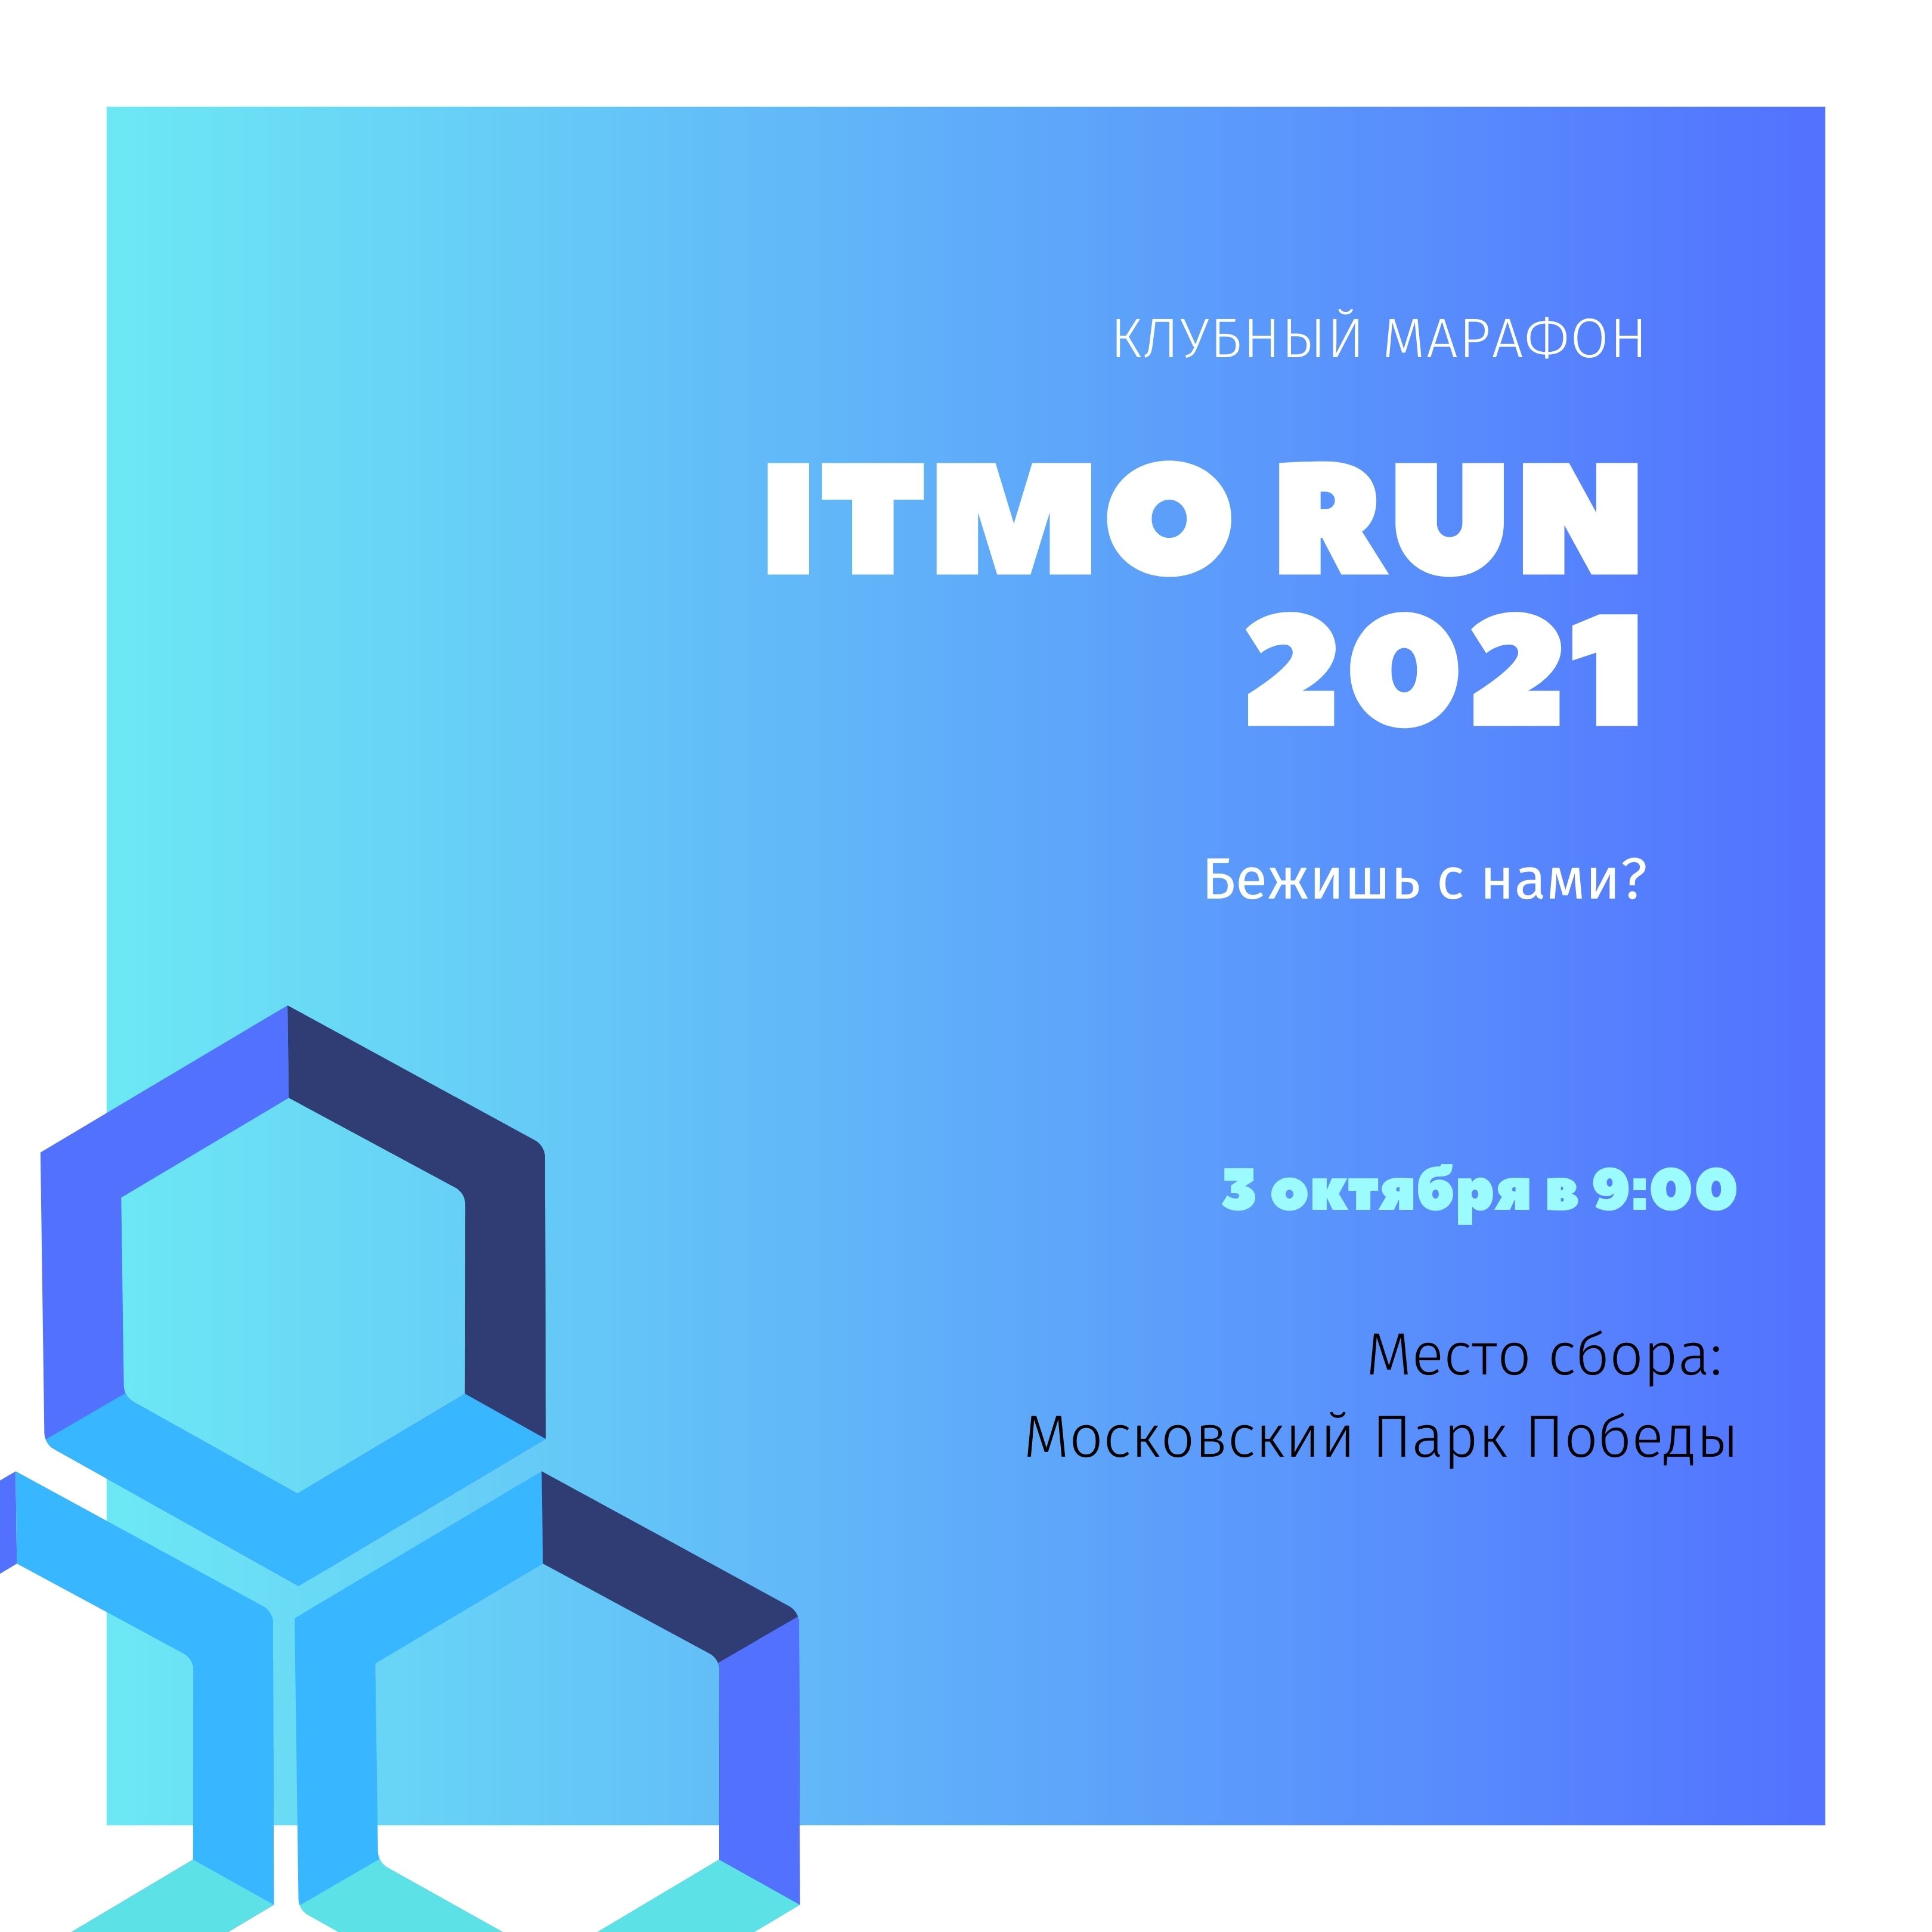 ITMO RUN 2021